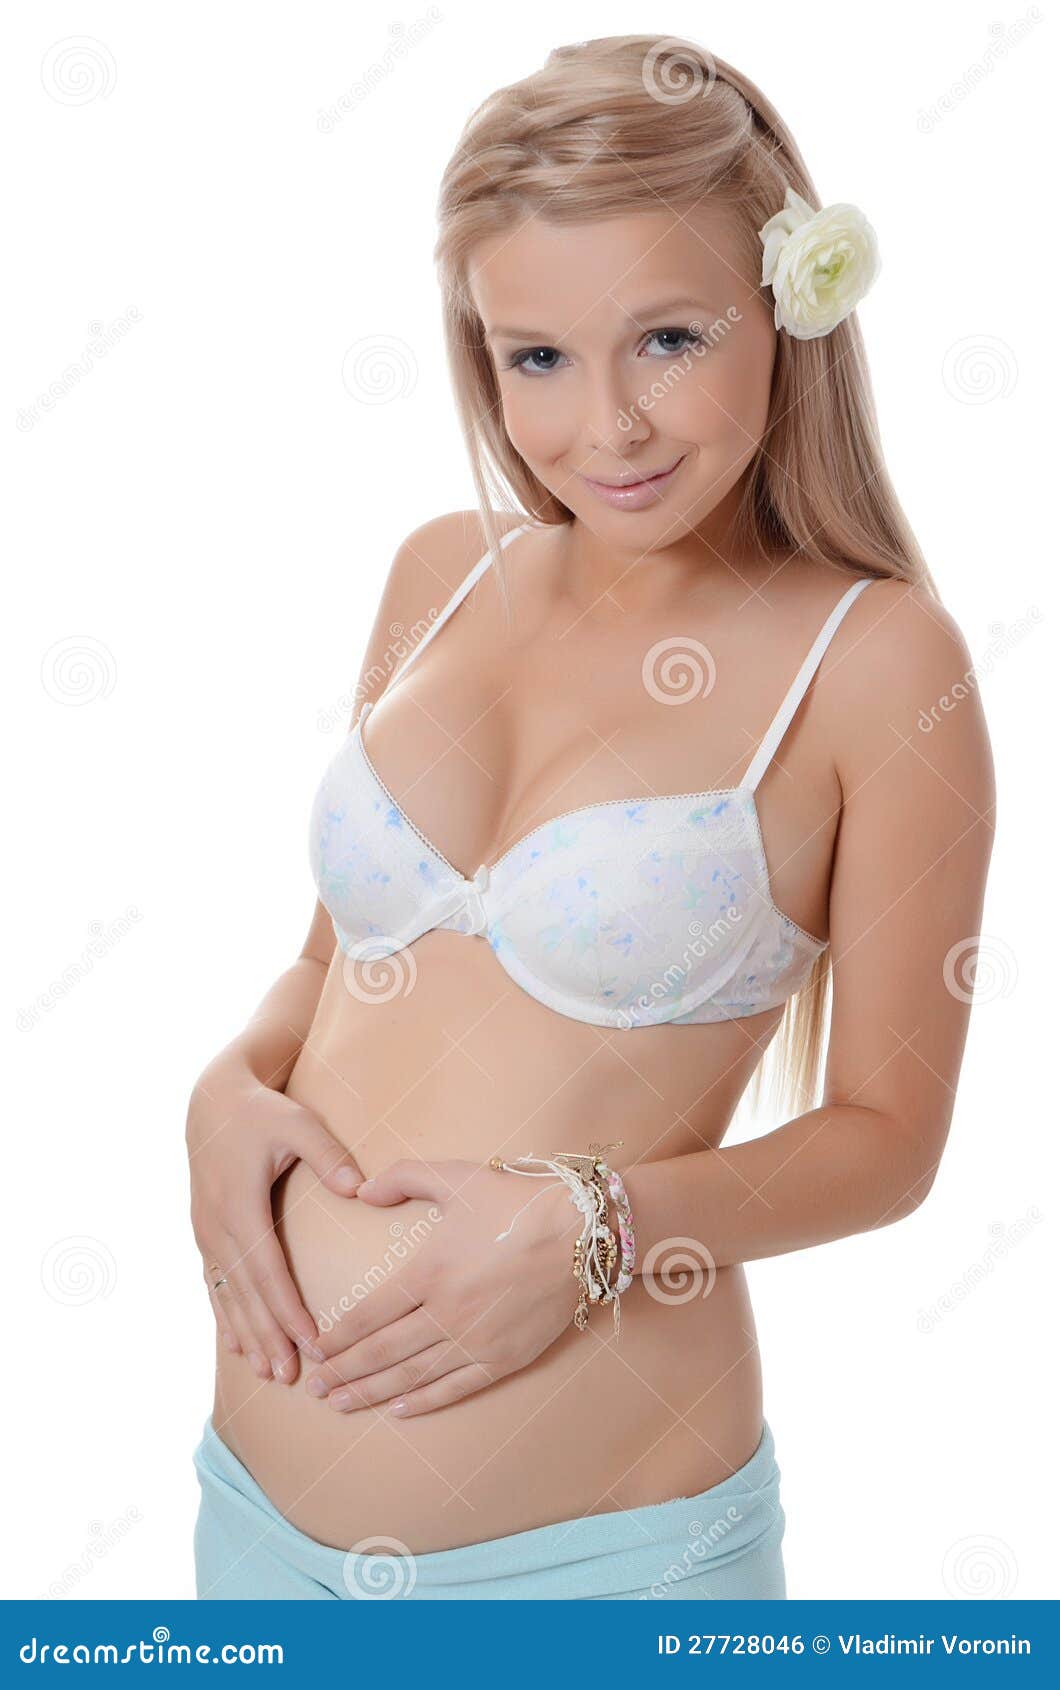 Blonde Pregnant Woman 34